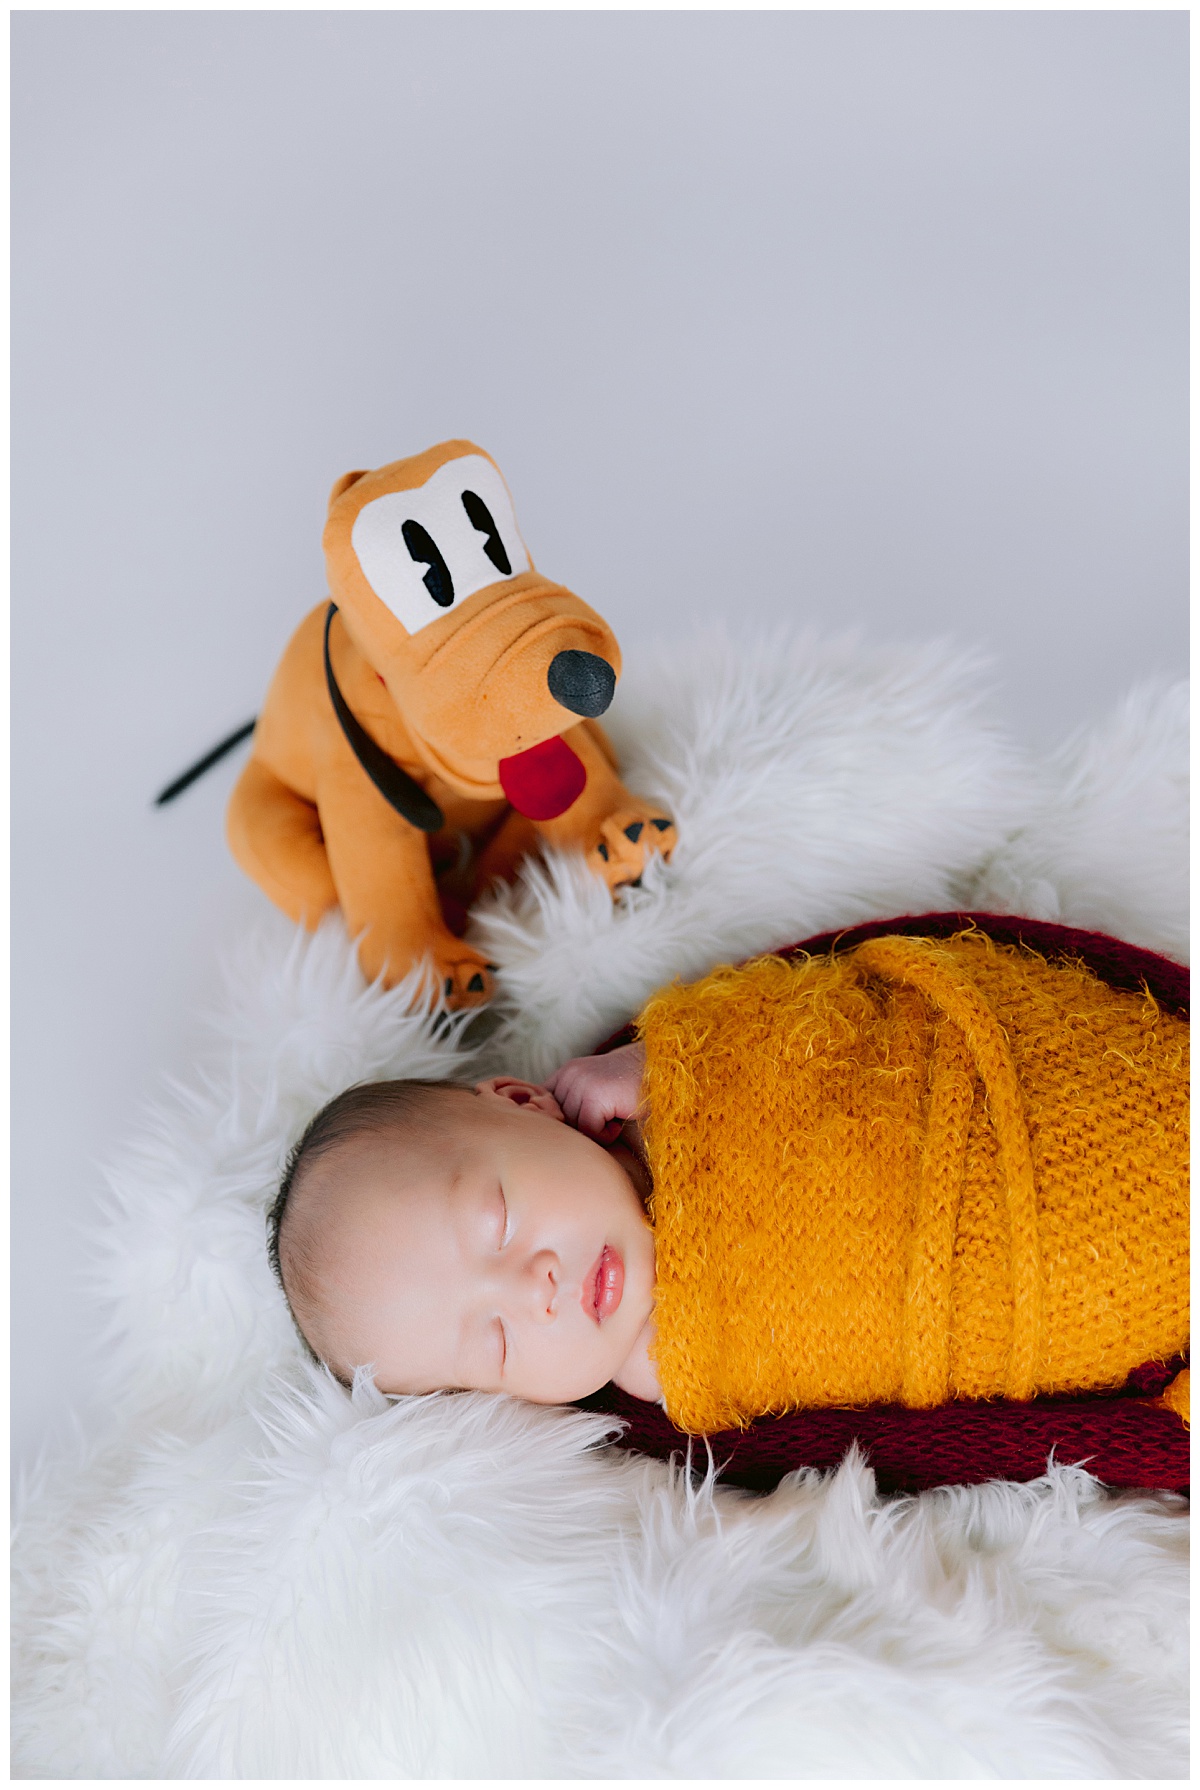 Disney Newborn photos for a baby boy 